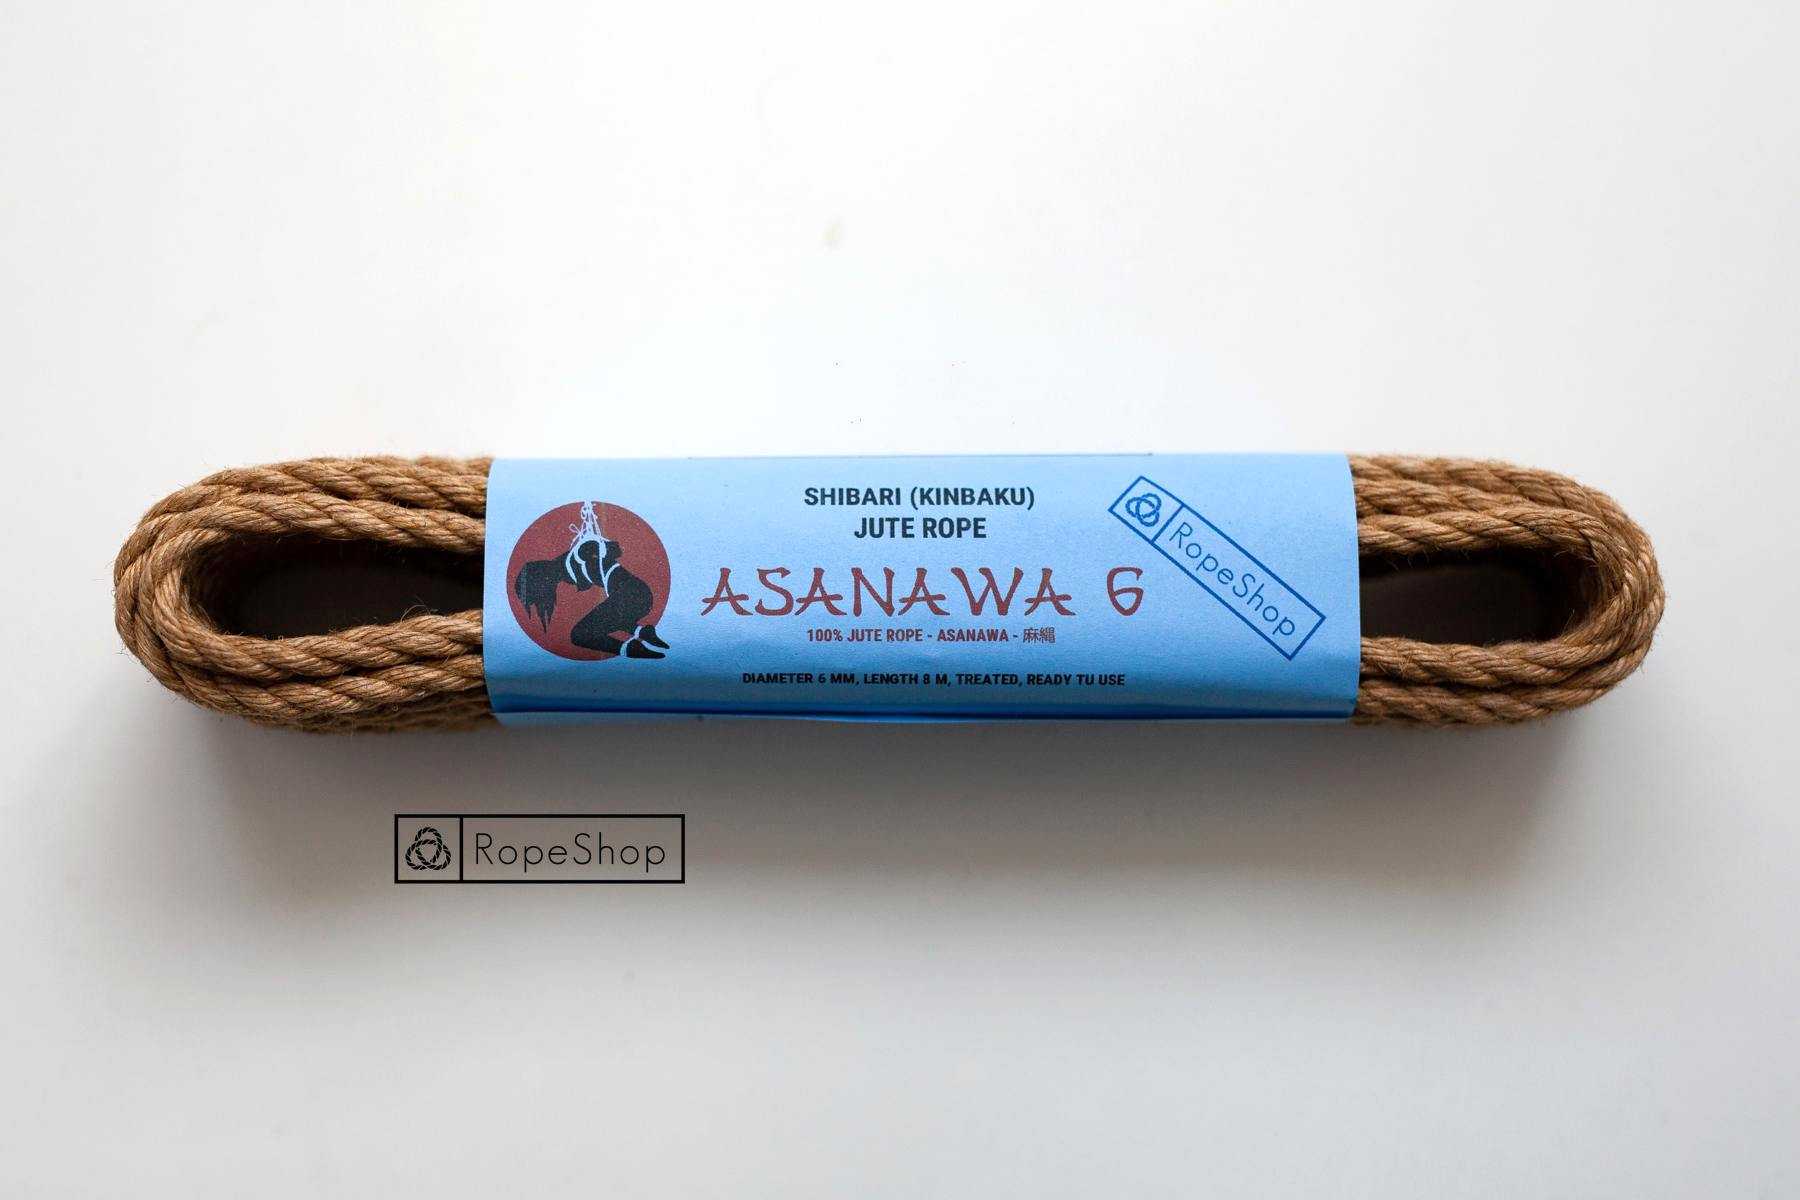 Веревка для шибари 6 мм. джутовая Asanawa 6 (Japan) обработанная, натуральная